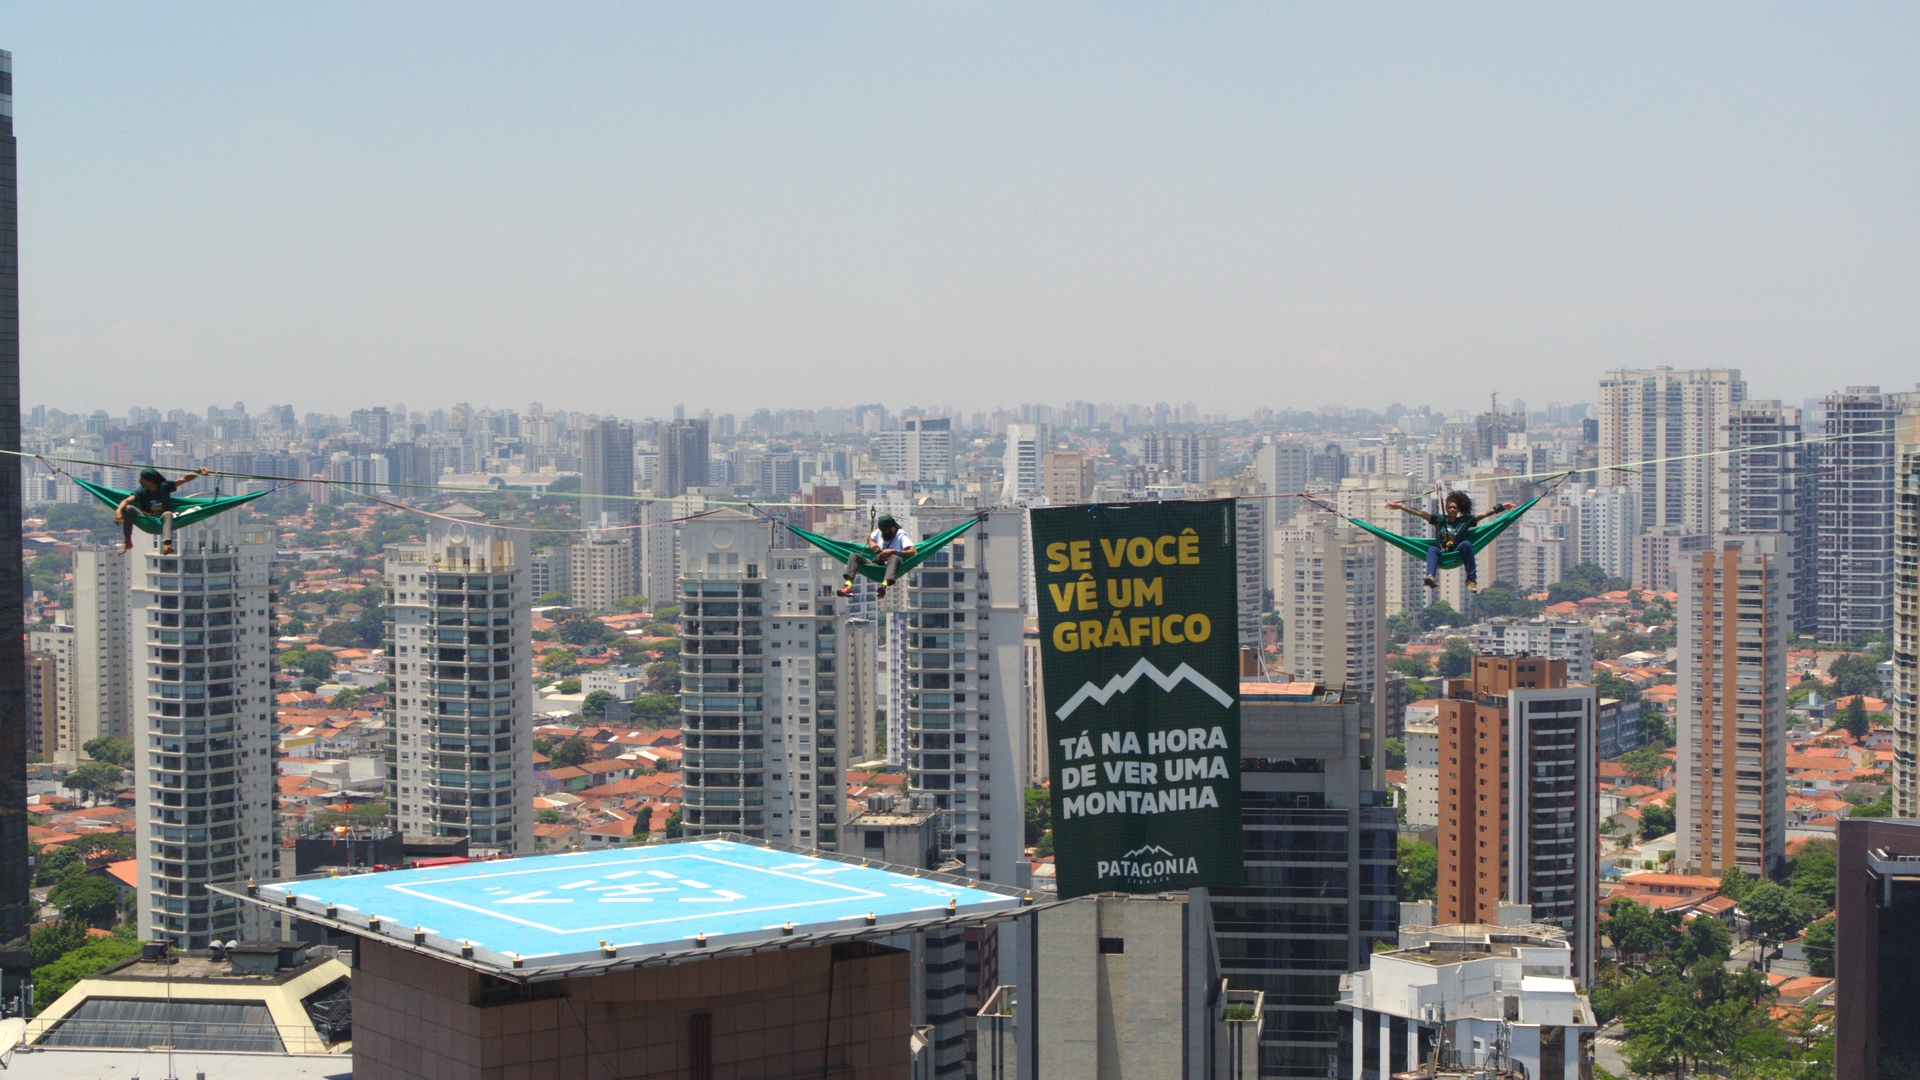 Atletas de highline fazem travessia entre prédios de São Paulo convocando as pessoas a irem às montanhas